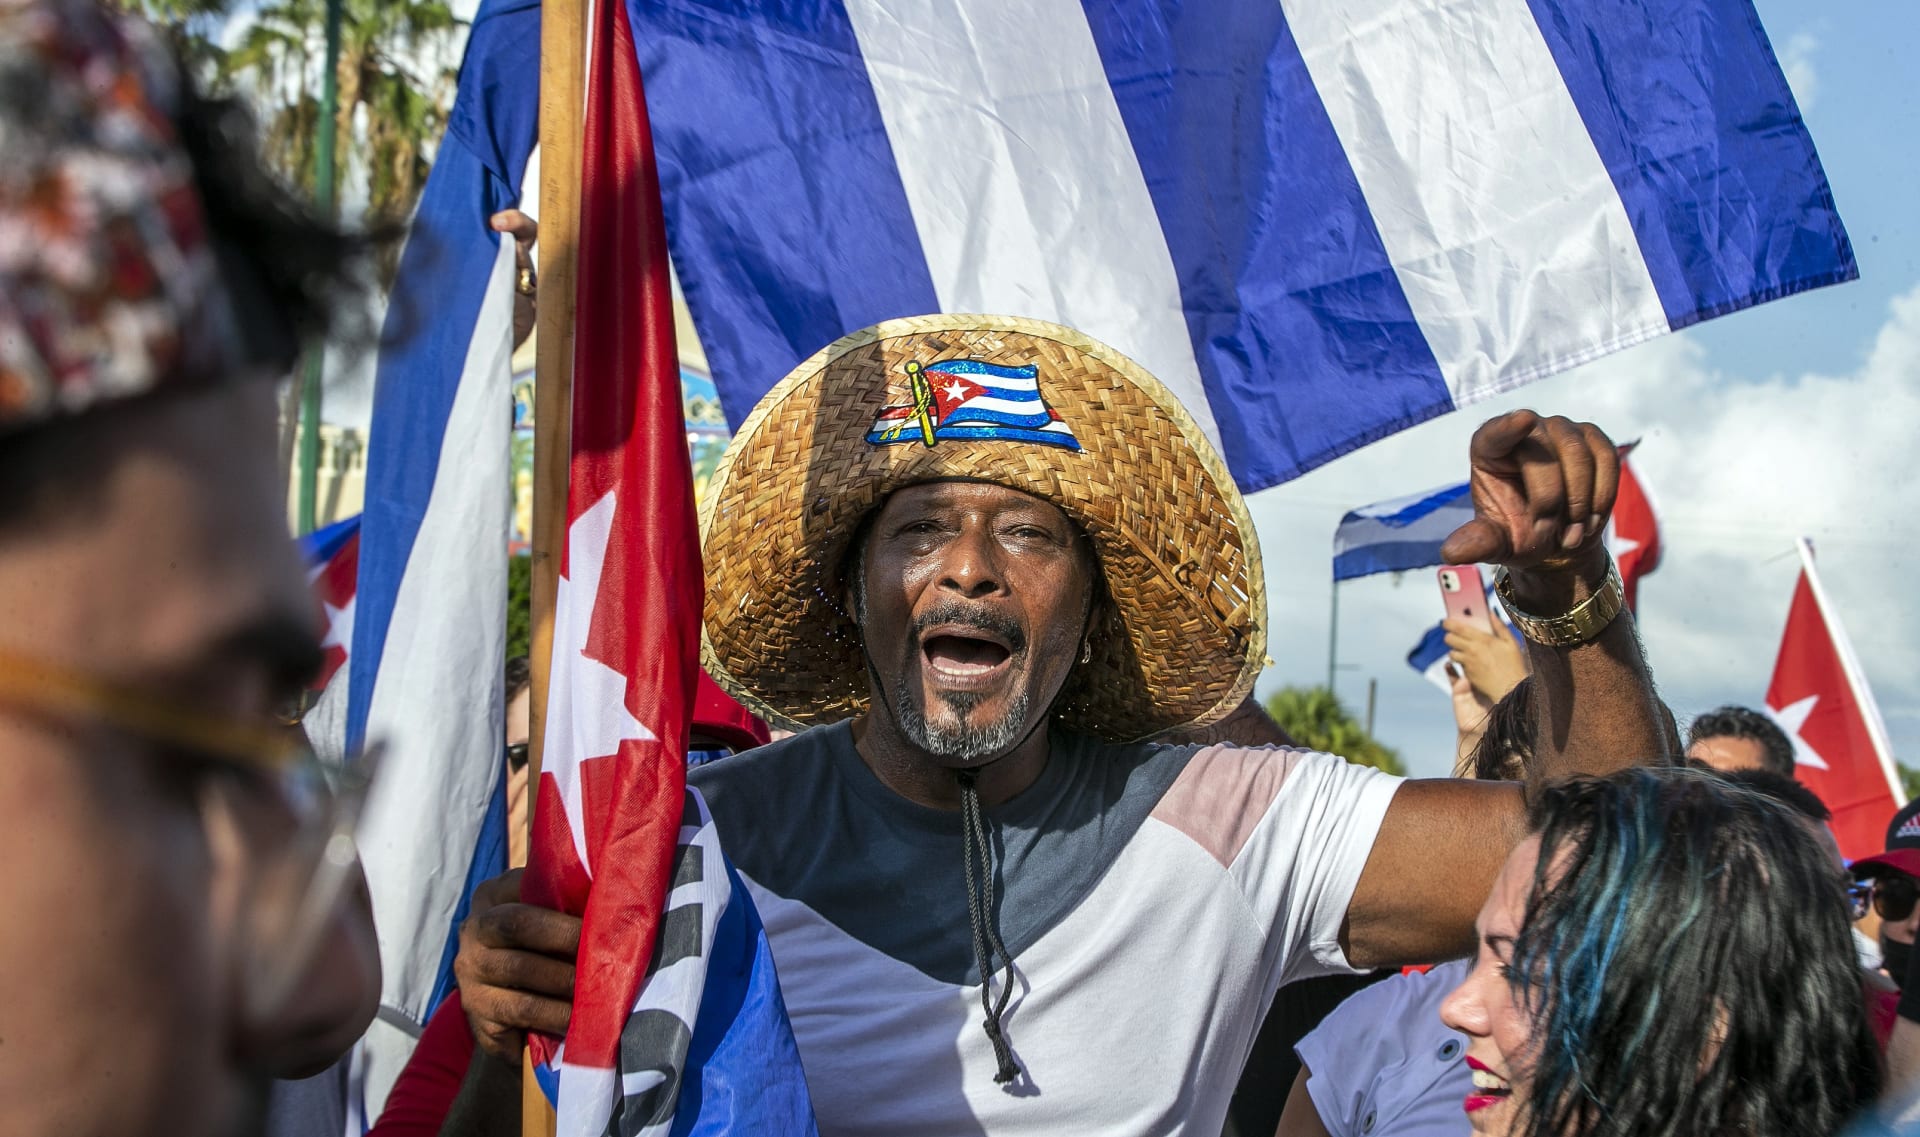 Kubáncům došla trpělivost kvůli nedostatku jídla a léků. Protesty proti ostrovnímu režimu se rozjely i jinde ve světě, například v USA, kde je početná komunita kubánských uprchlíků.